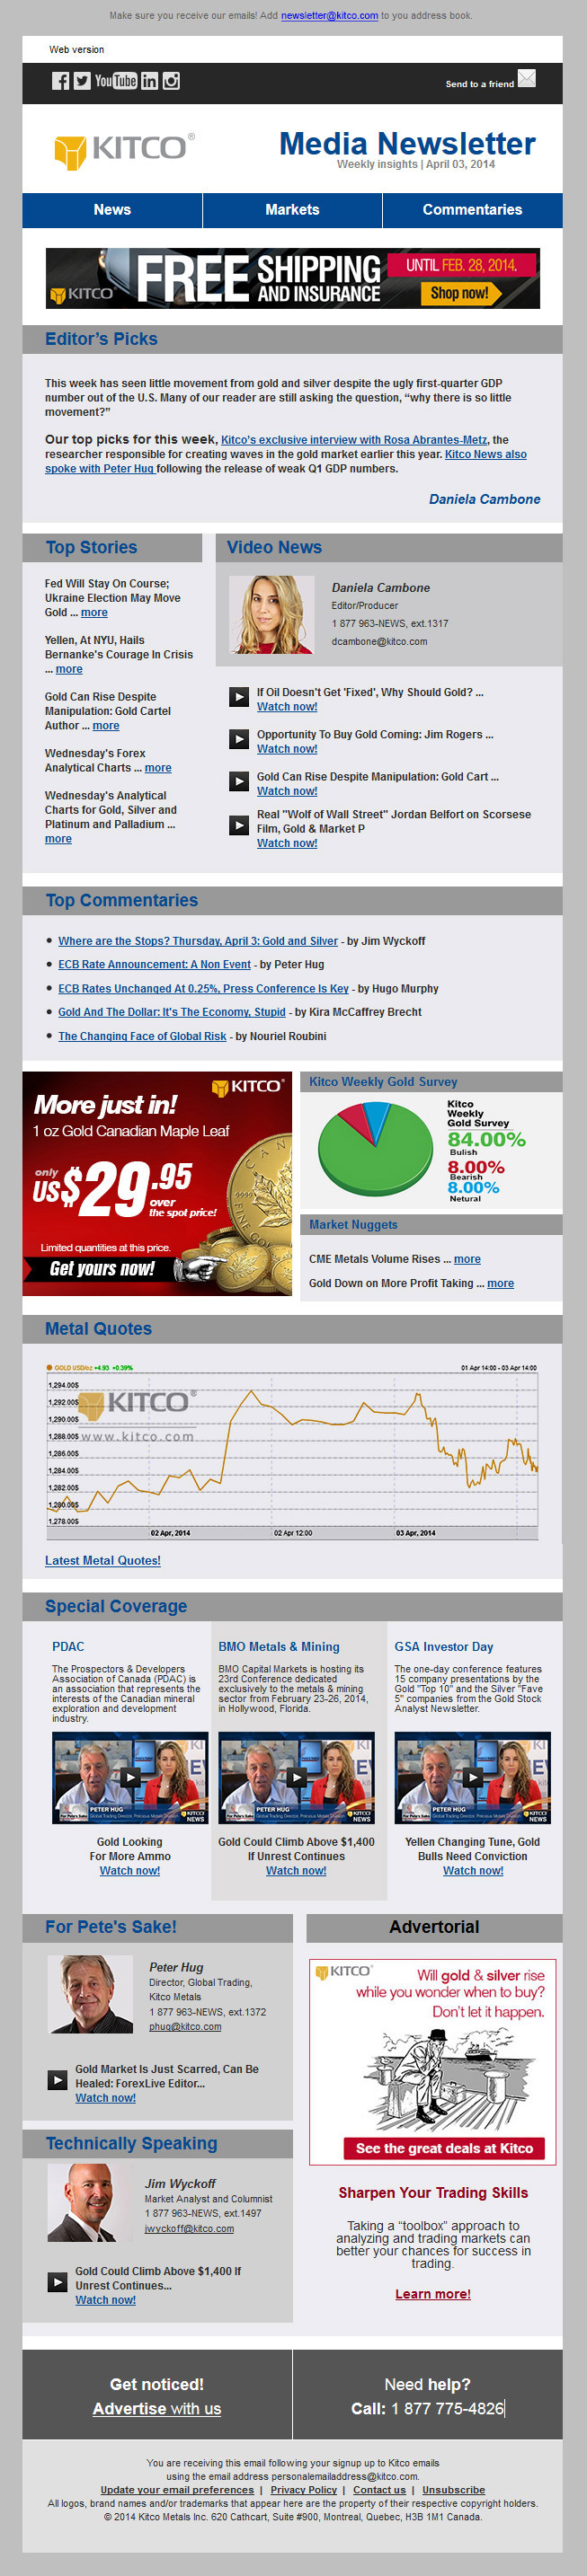 Kitco newsletter sample